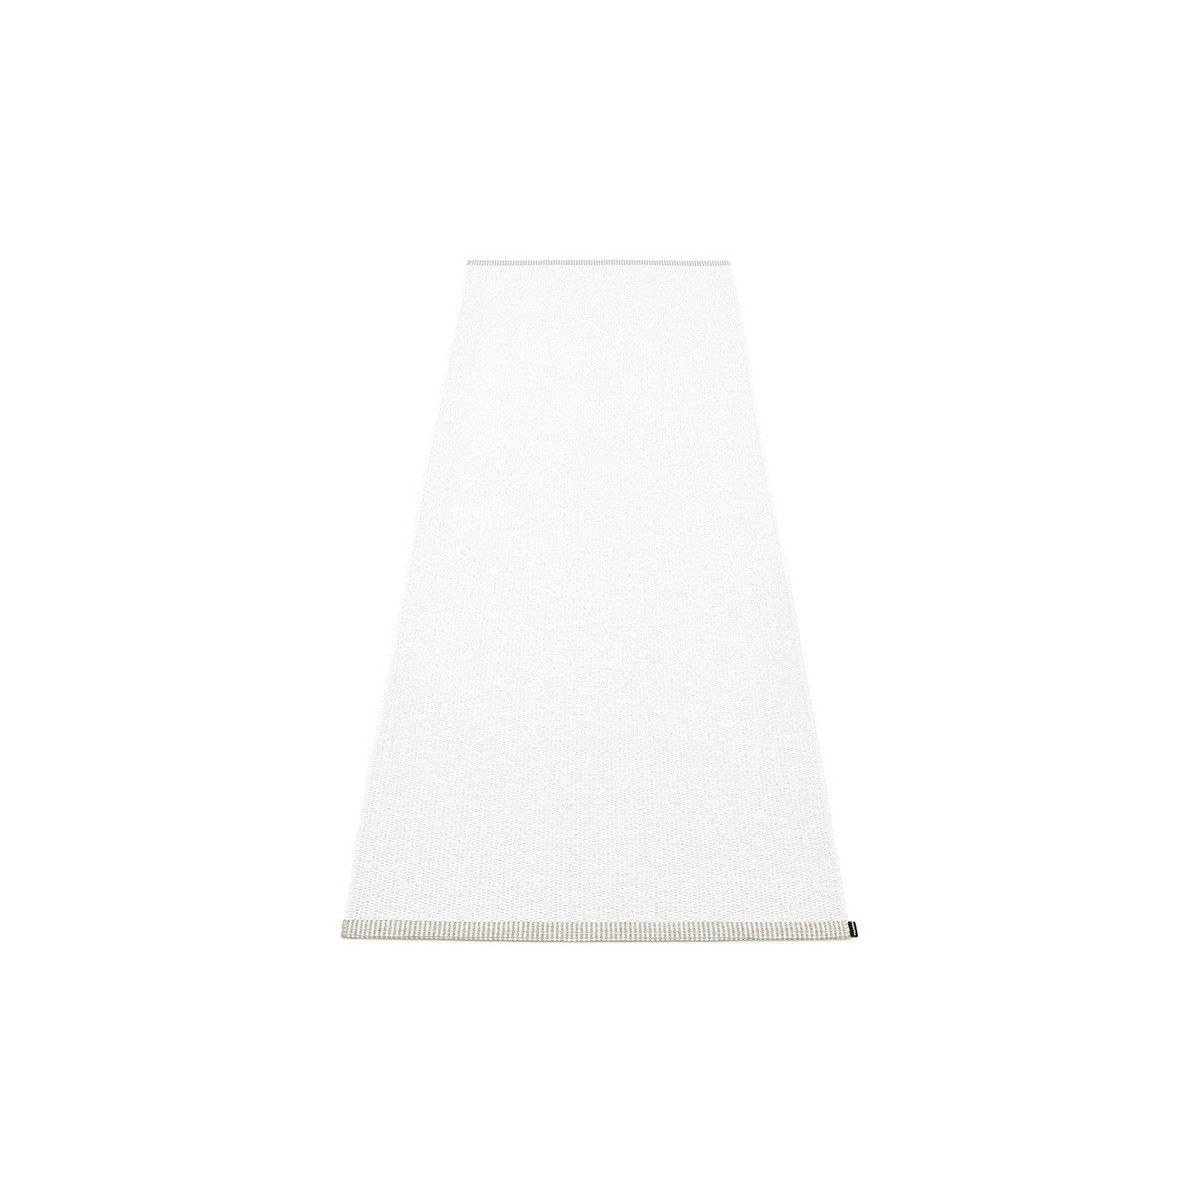 60x150cm - Rug Mono White  - OFFER